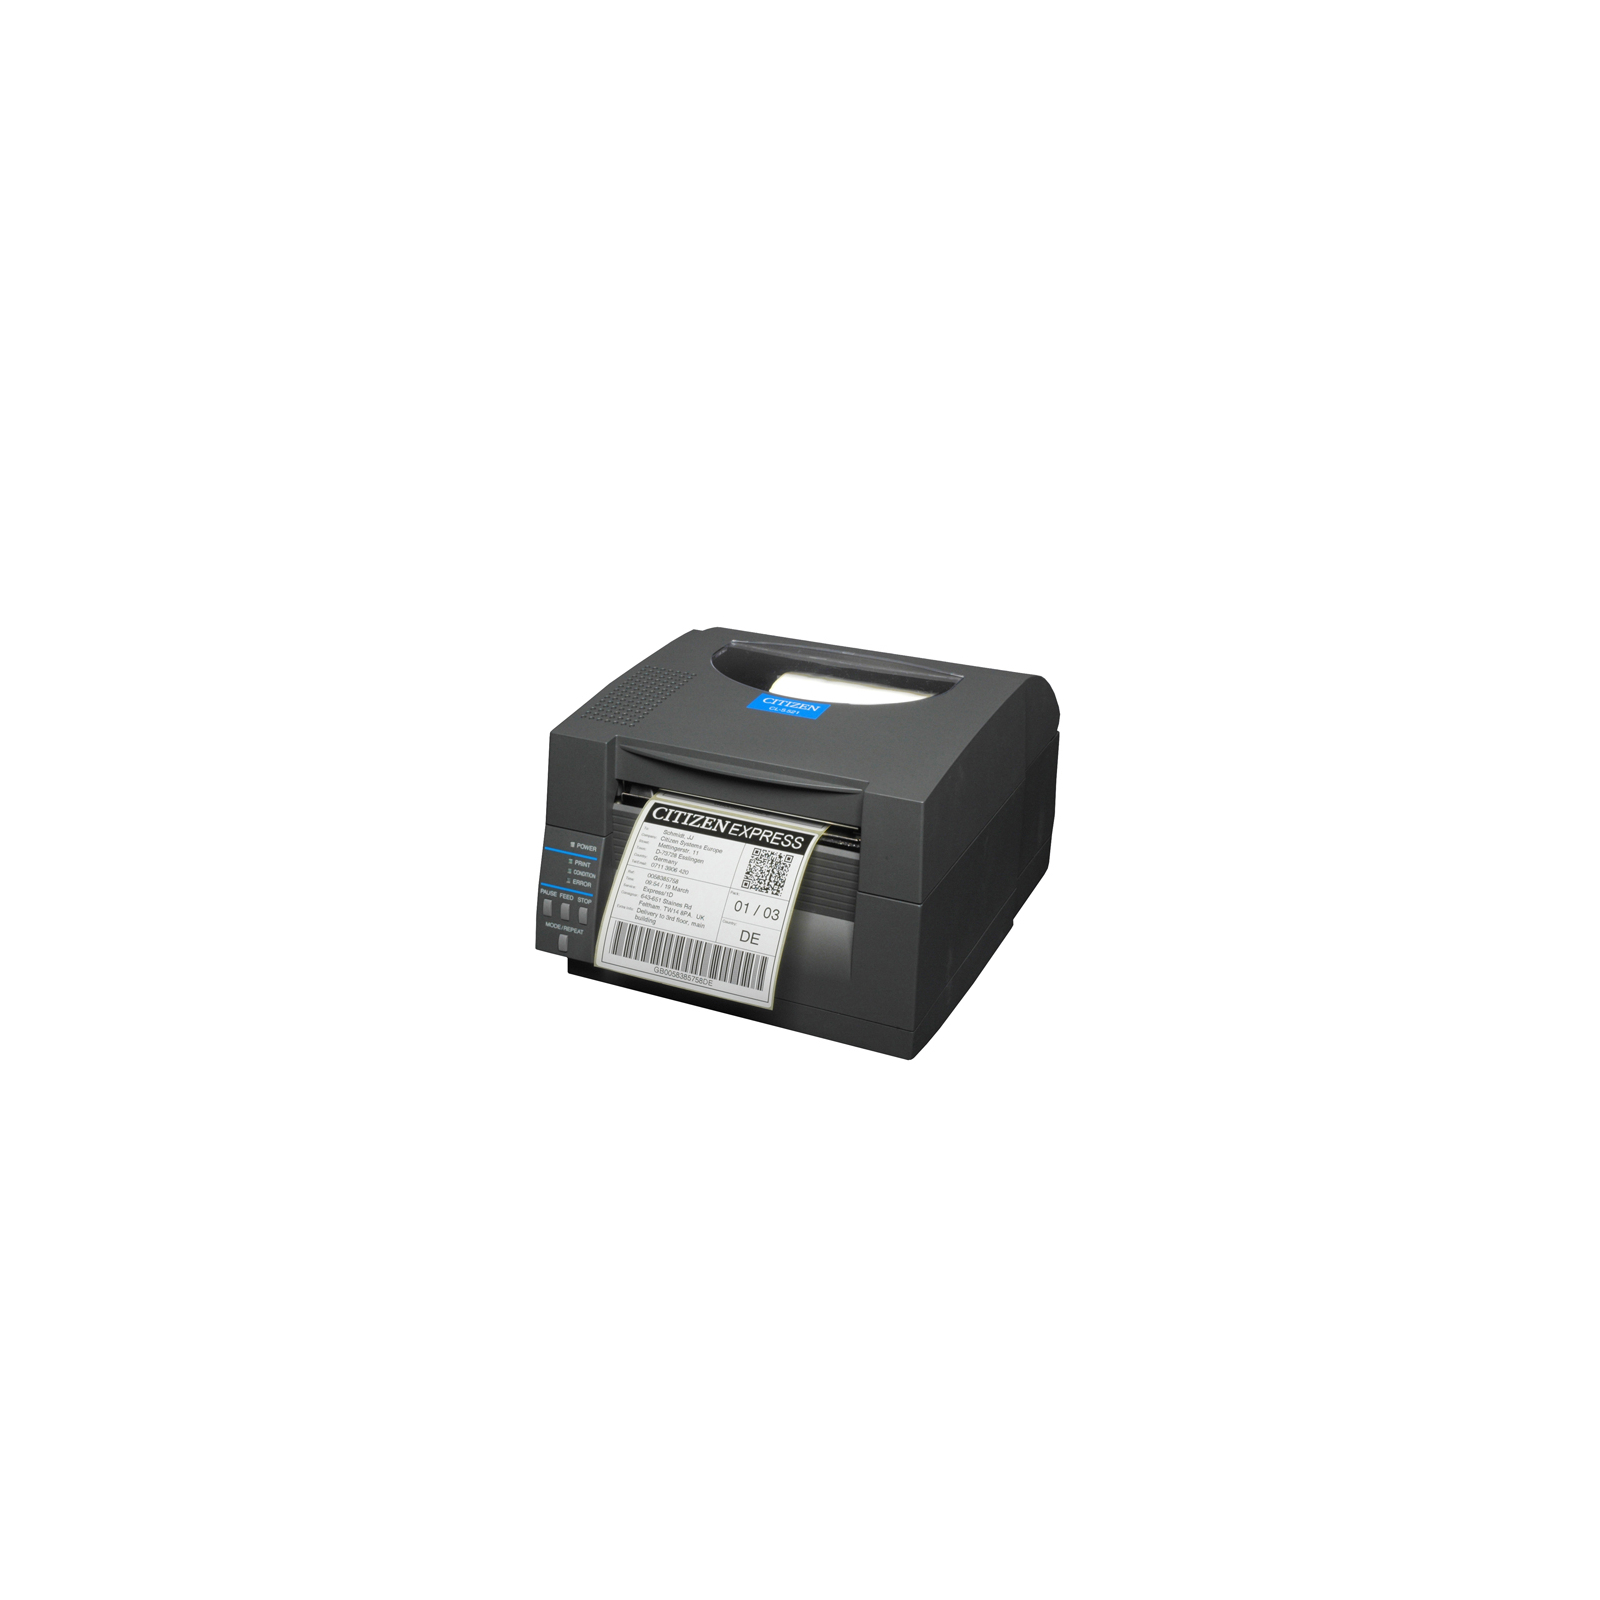 Принтер етикеток Citizen CL-S521 (1000815)